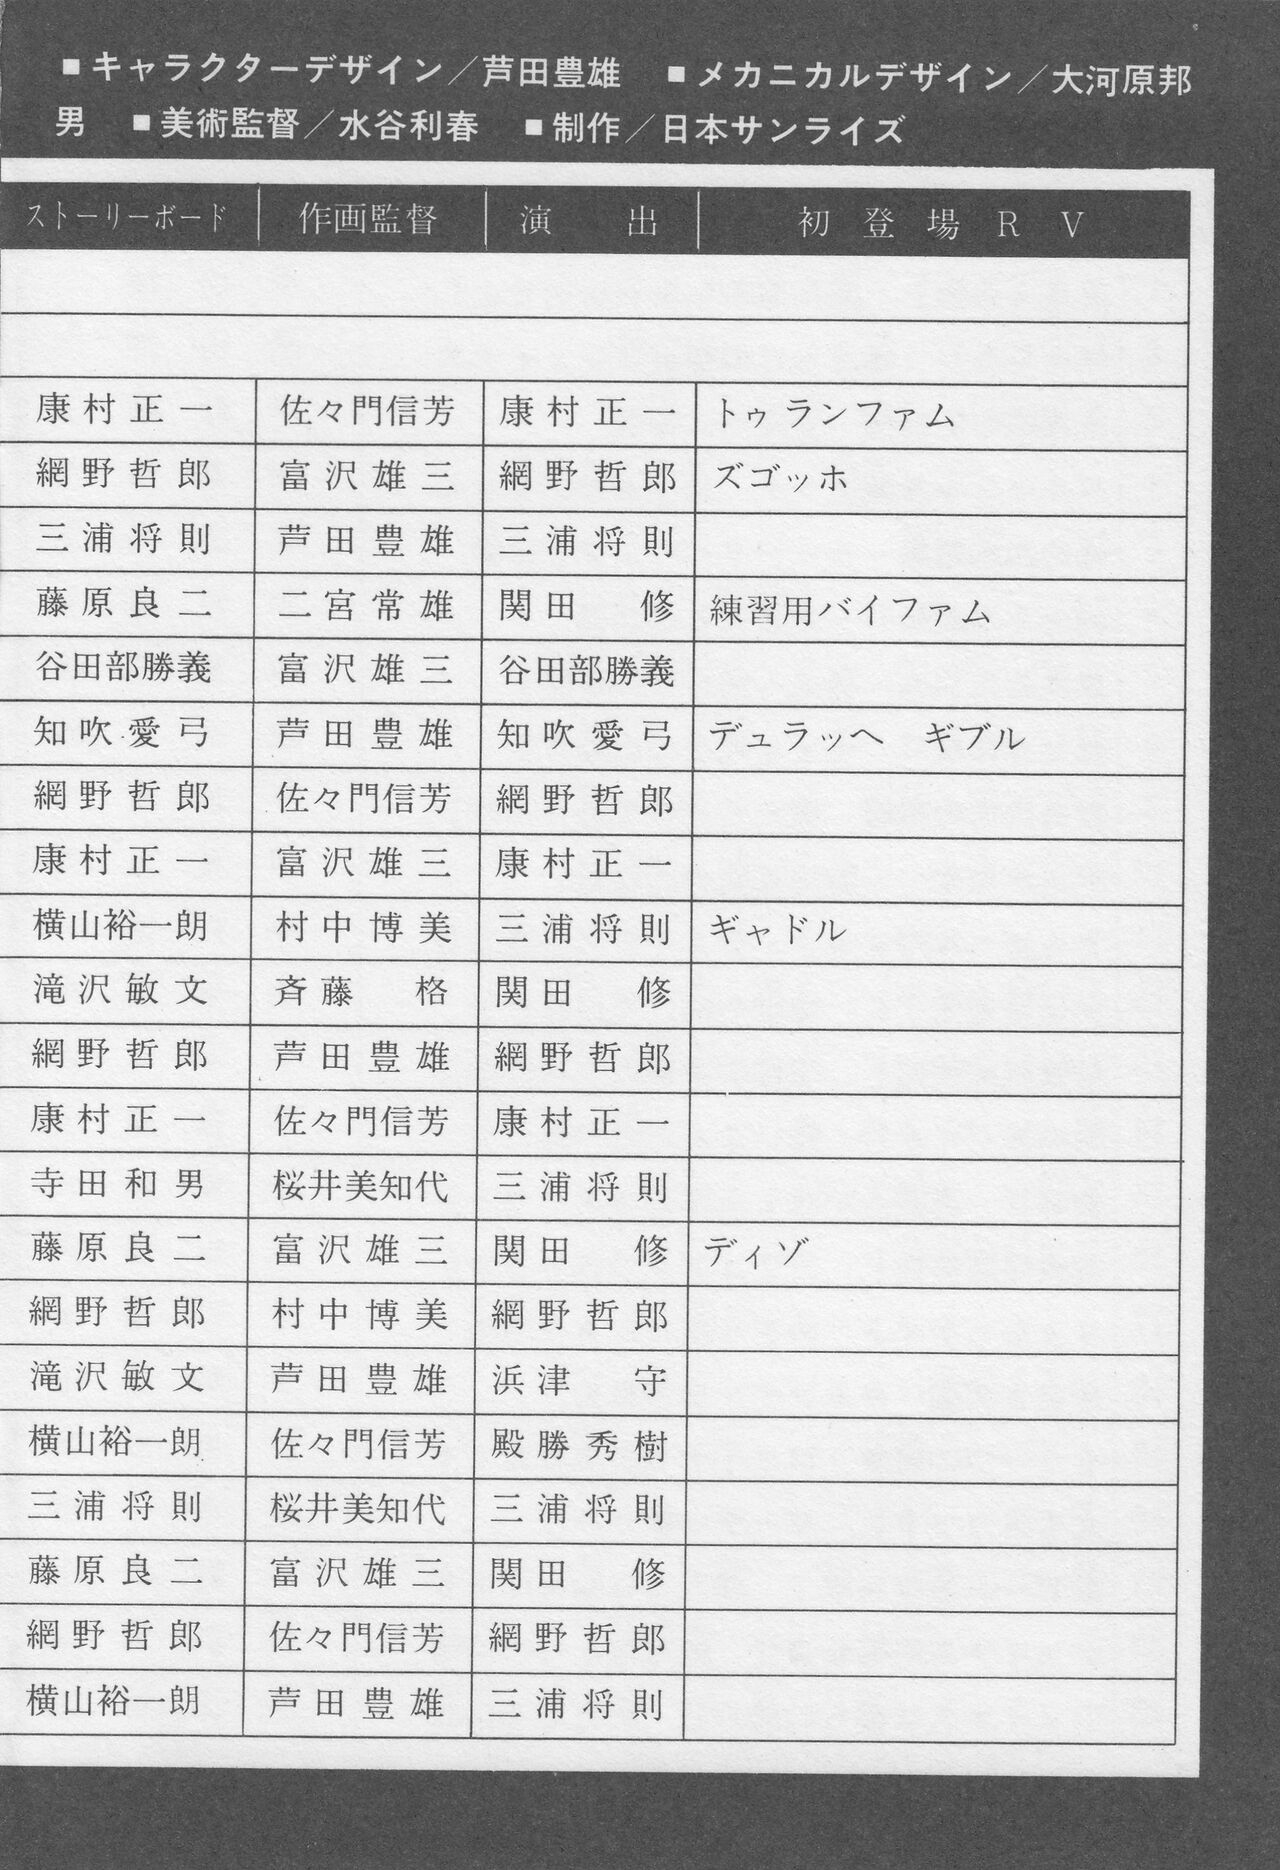 Koudan Pocket Hyakka Series 37: Anime Special 4 - Round Vernian Vifam 192